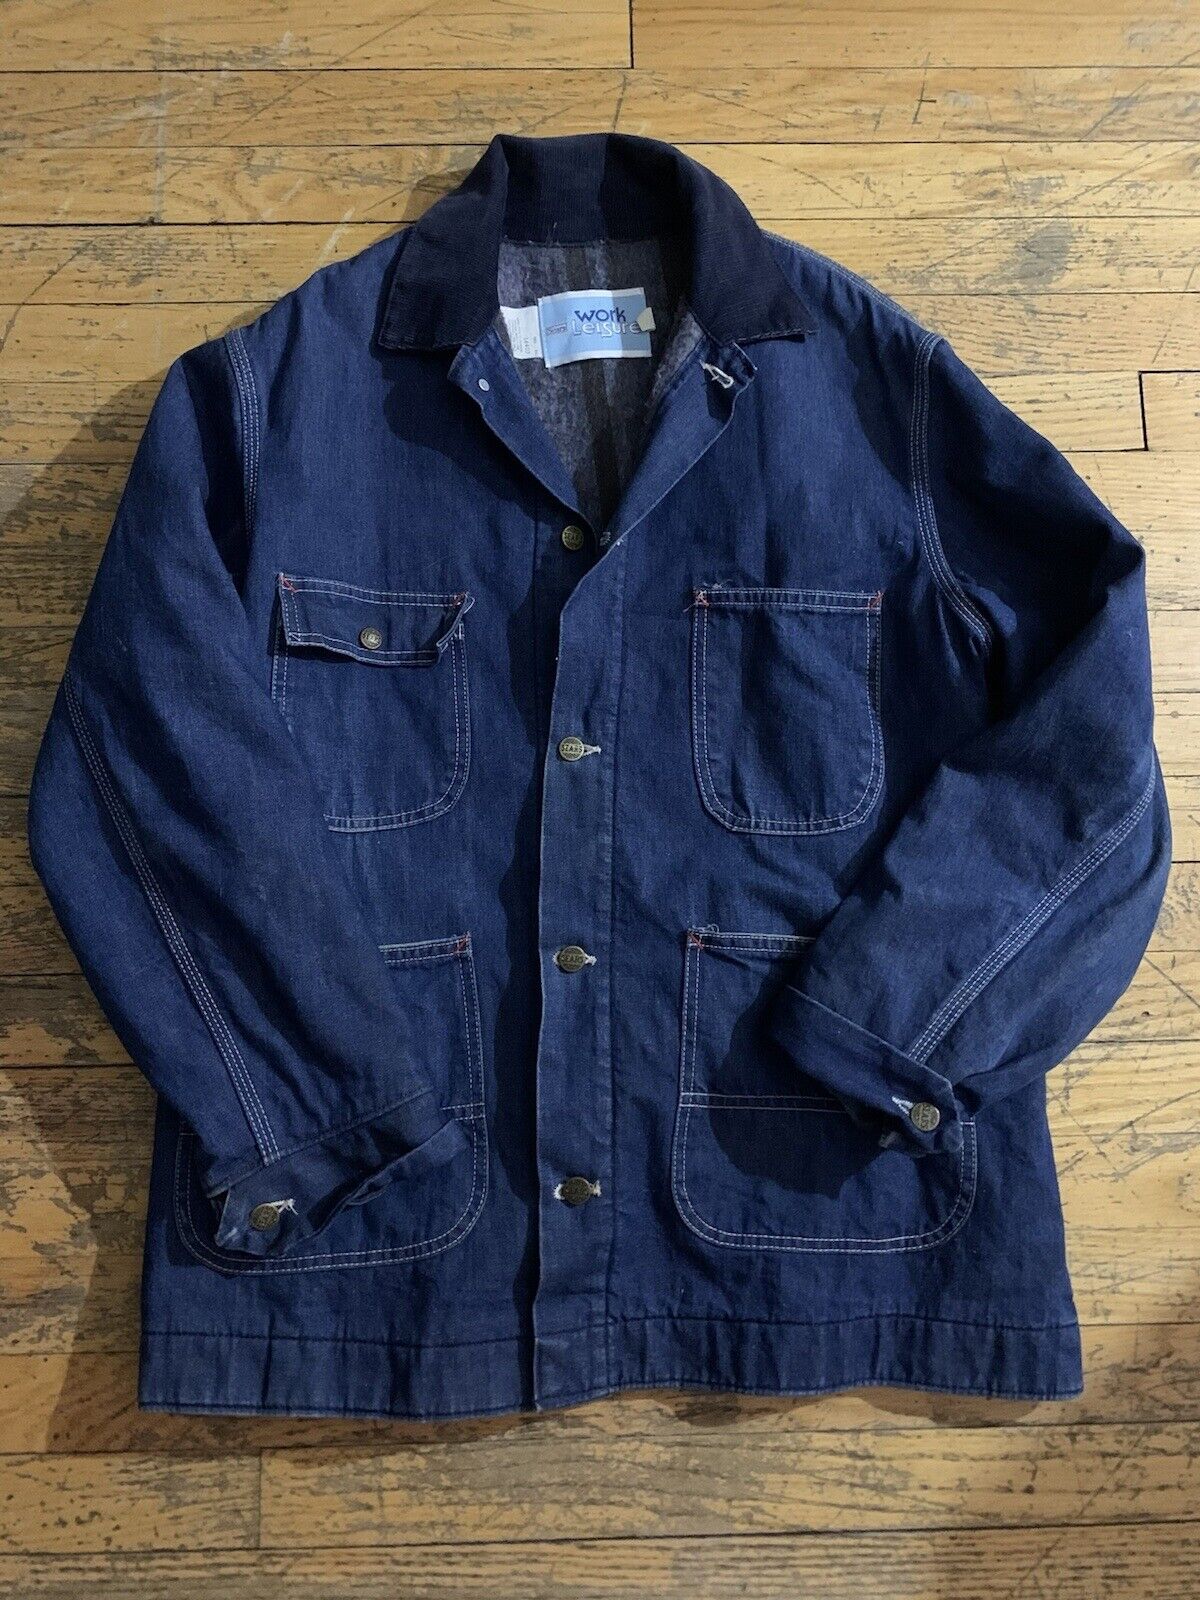 Vintage Sears Workwear Jacket Large 42-44